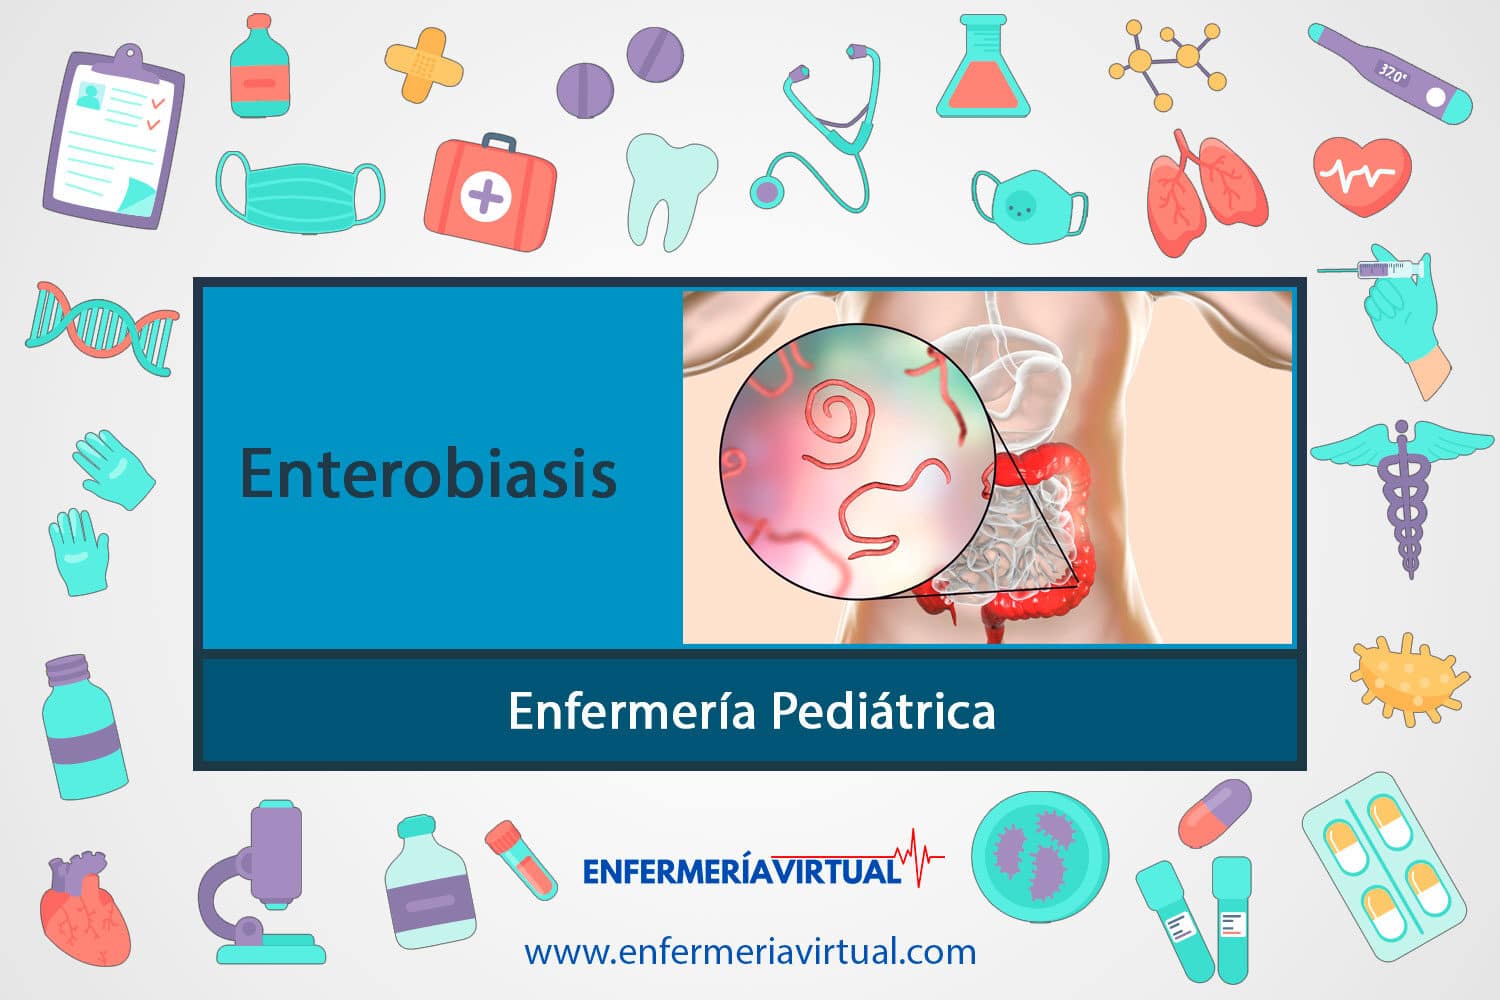 Enterobiasis